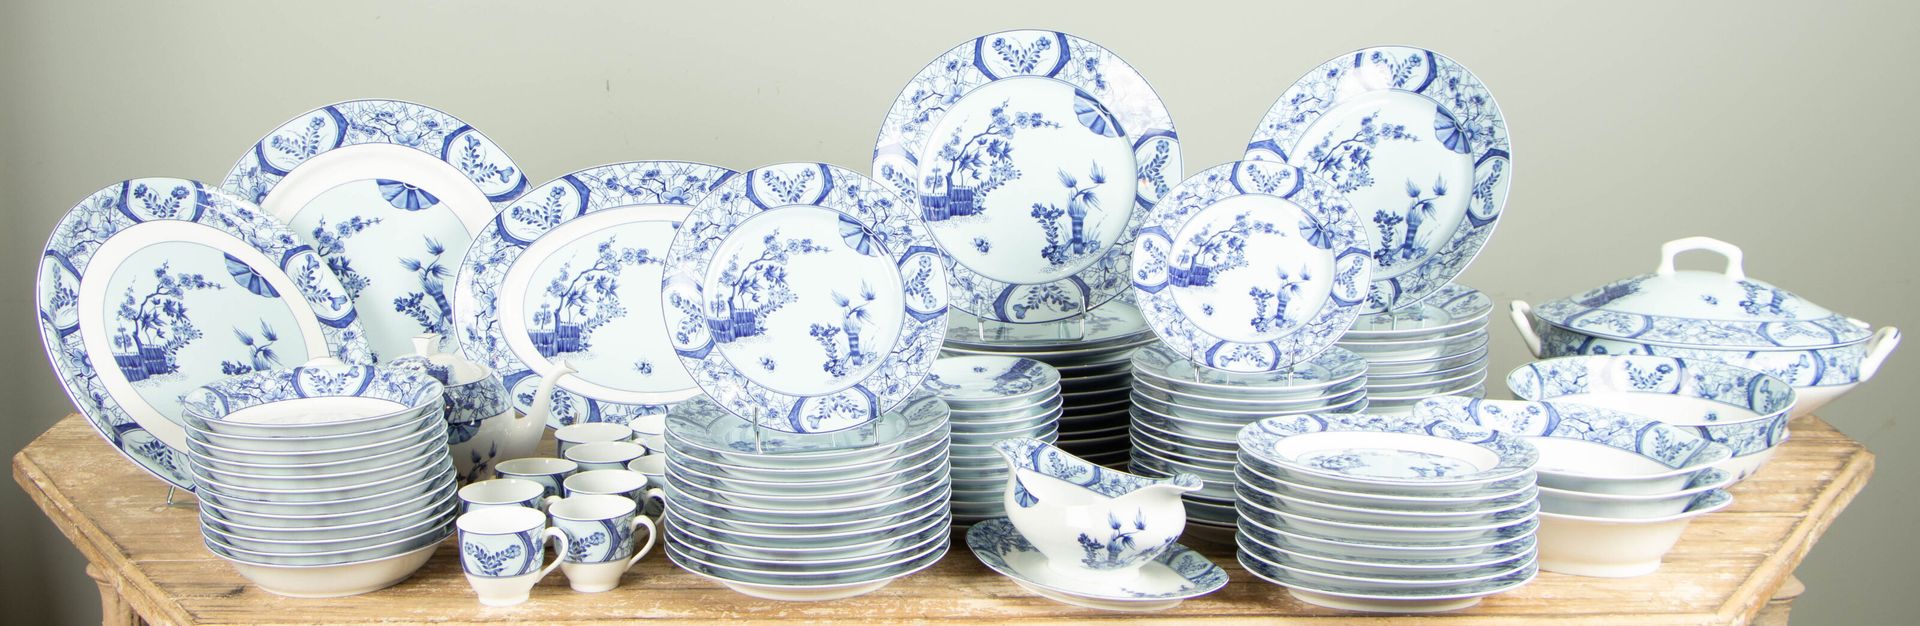 Null 利摩日的哈维兰，"莫奈的陶瓷 "模型。
为吉维尼的克劳德-莫奈基金会发行。
重要的瓷器服务，包括：
- 十二个汤盘
- 十二个奶酪盘
- 十二个杯碟
&hellip;